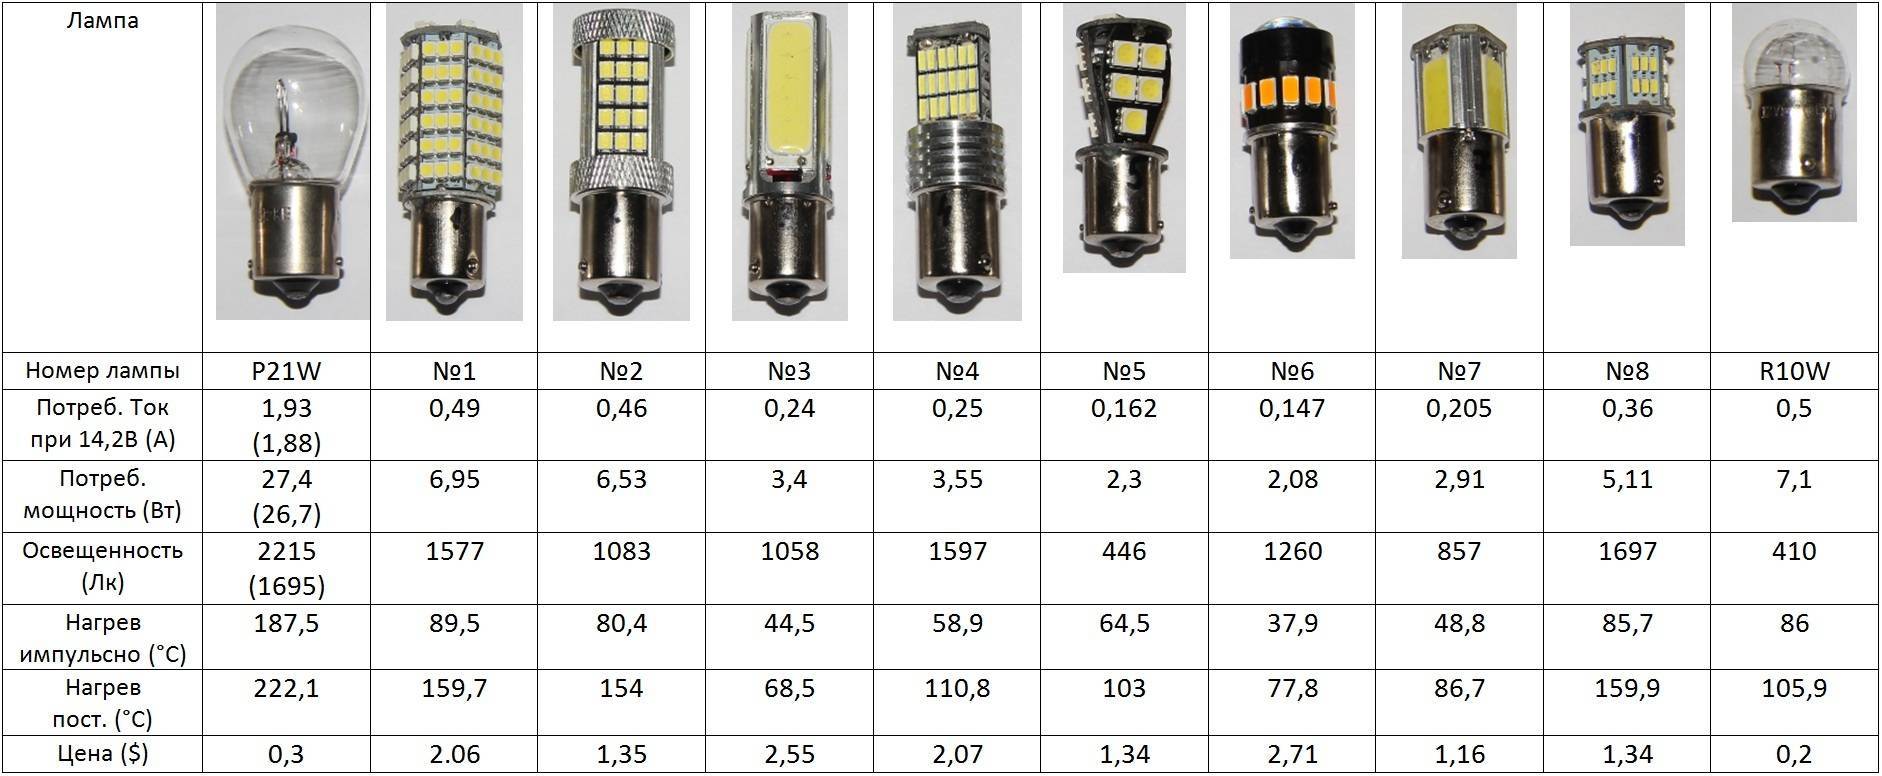 Светодиодные лампы для авто ближнего и дальнего света h4: конструкция, виды и характеристики